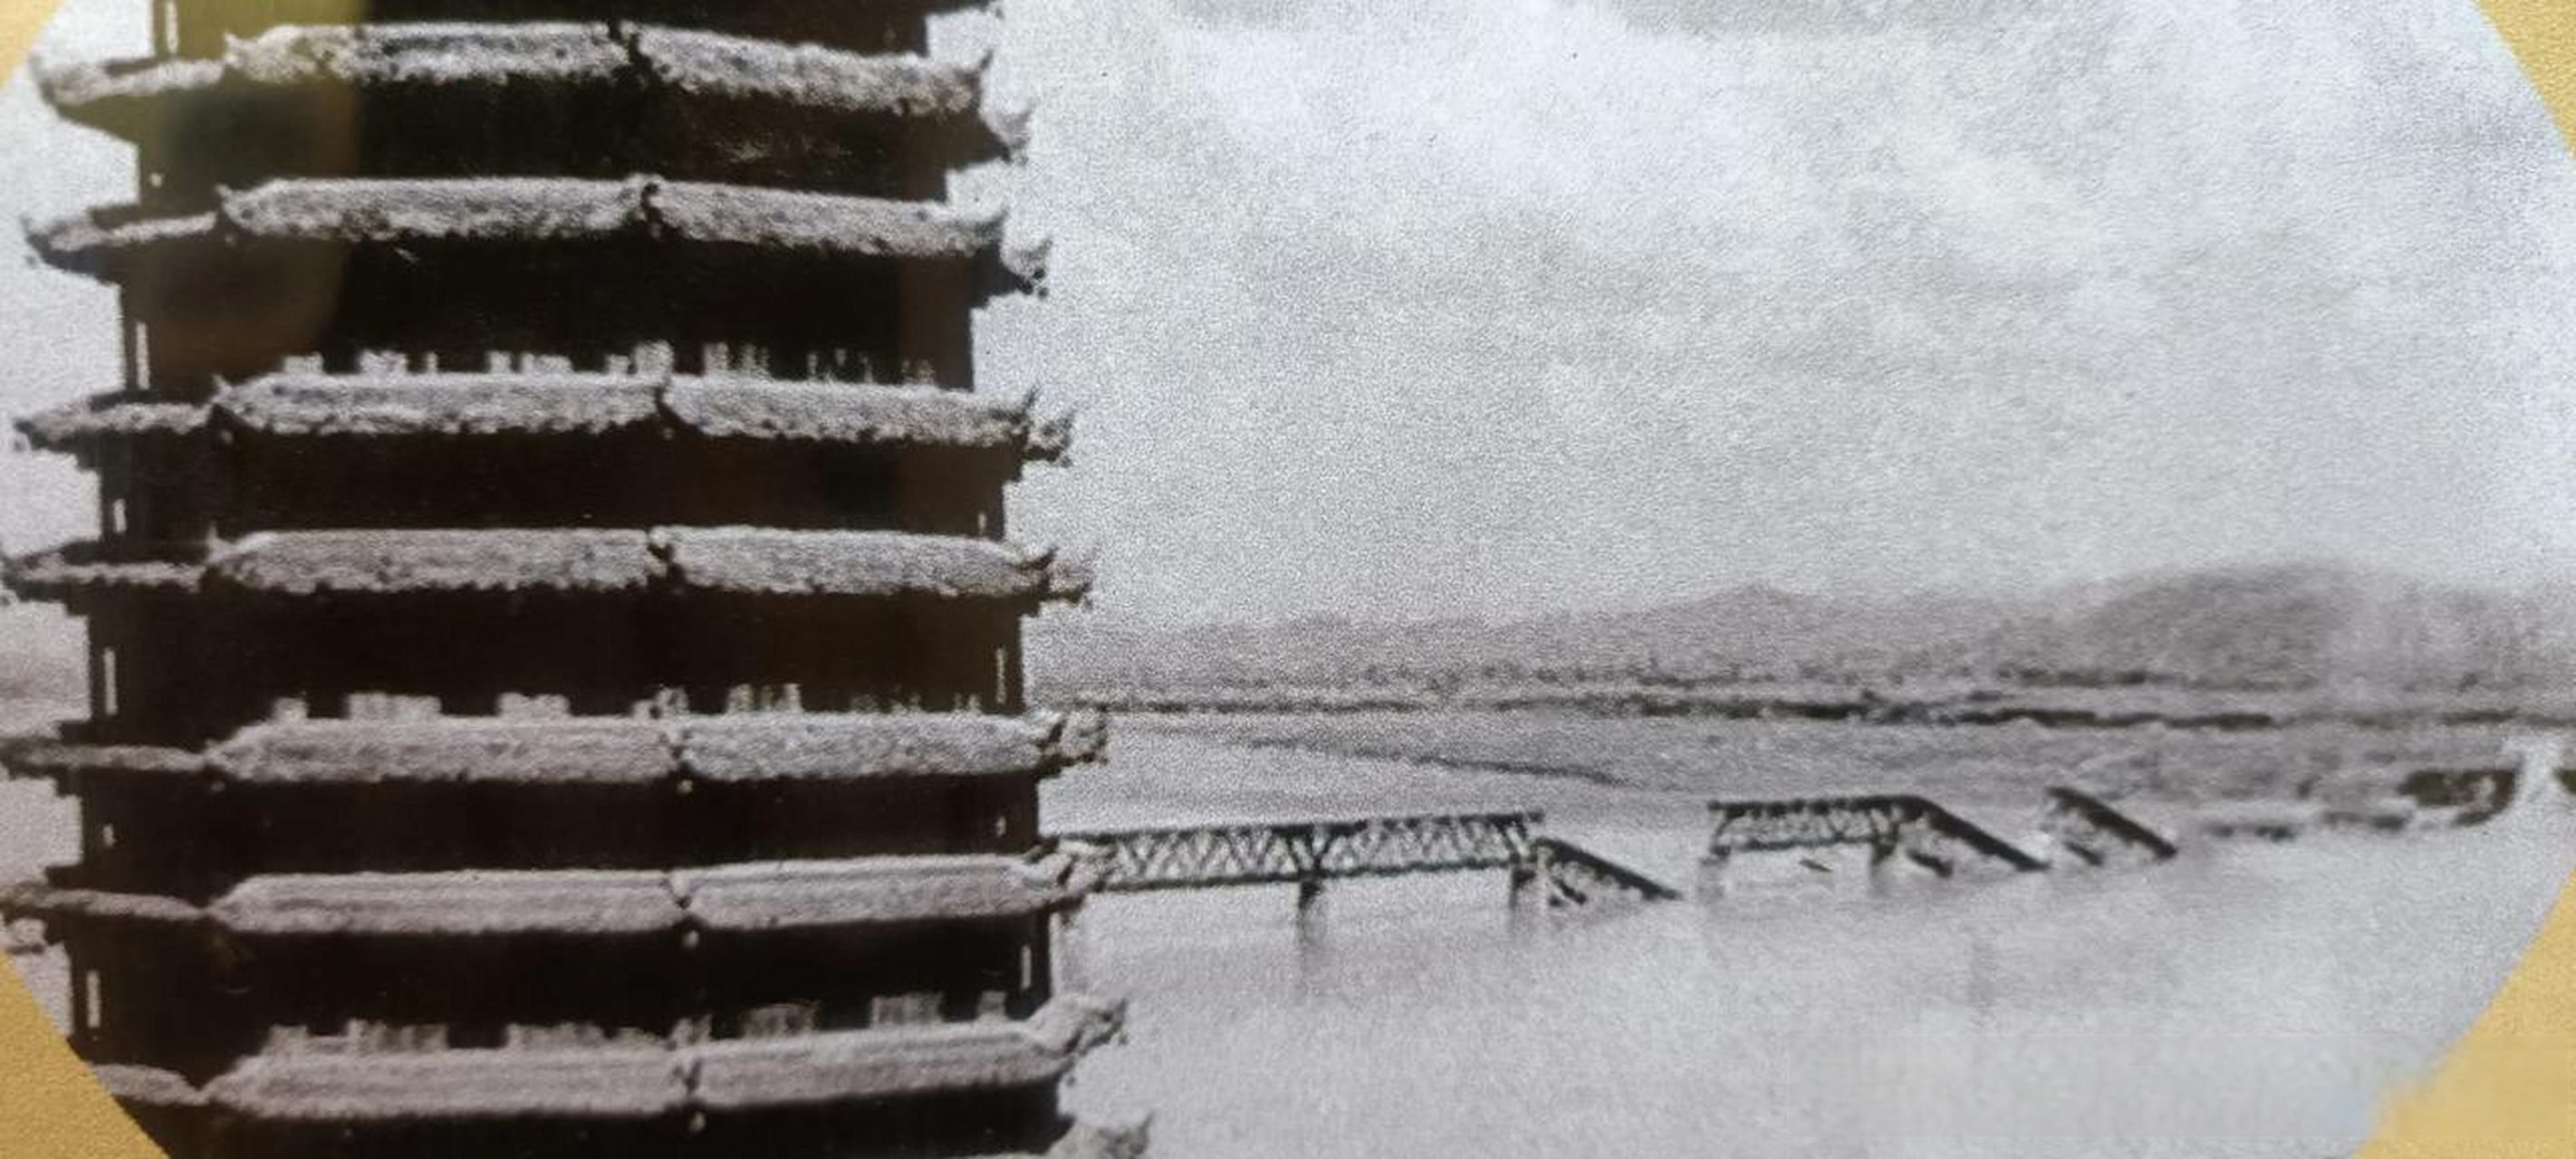 年我国的桥梁专家茅以升博士设计,第1次中国人自行建造了钱塘江大桥